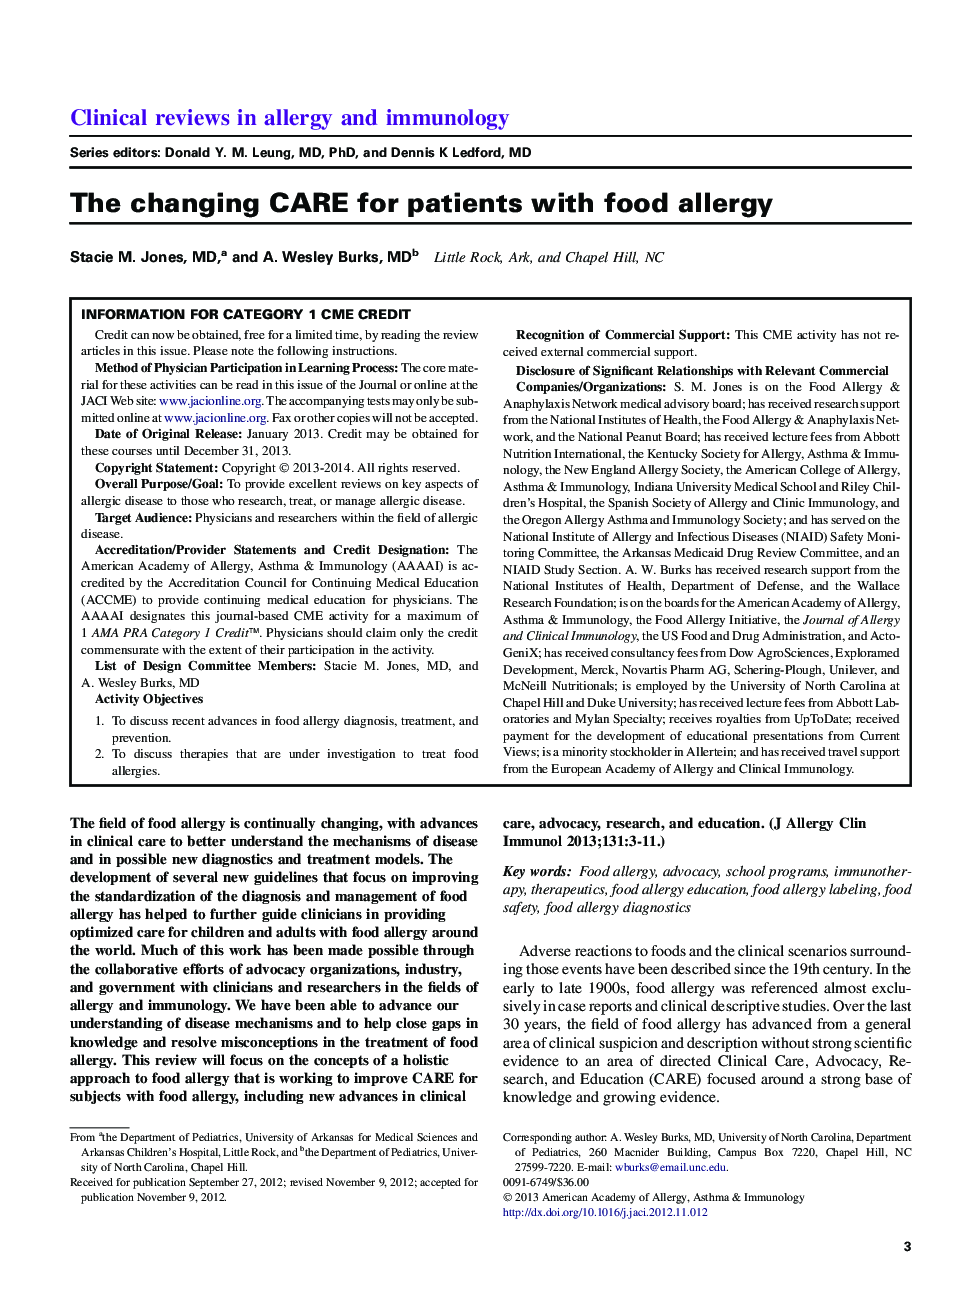 مراقبتهای تغذیه ای برای بیماران مبتلا به آلرژی غذایی 